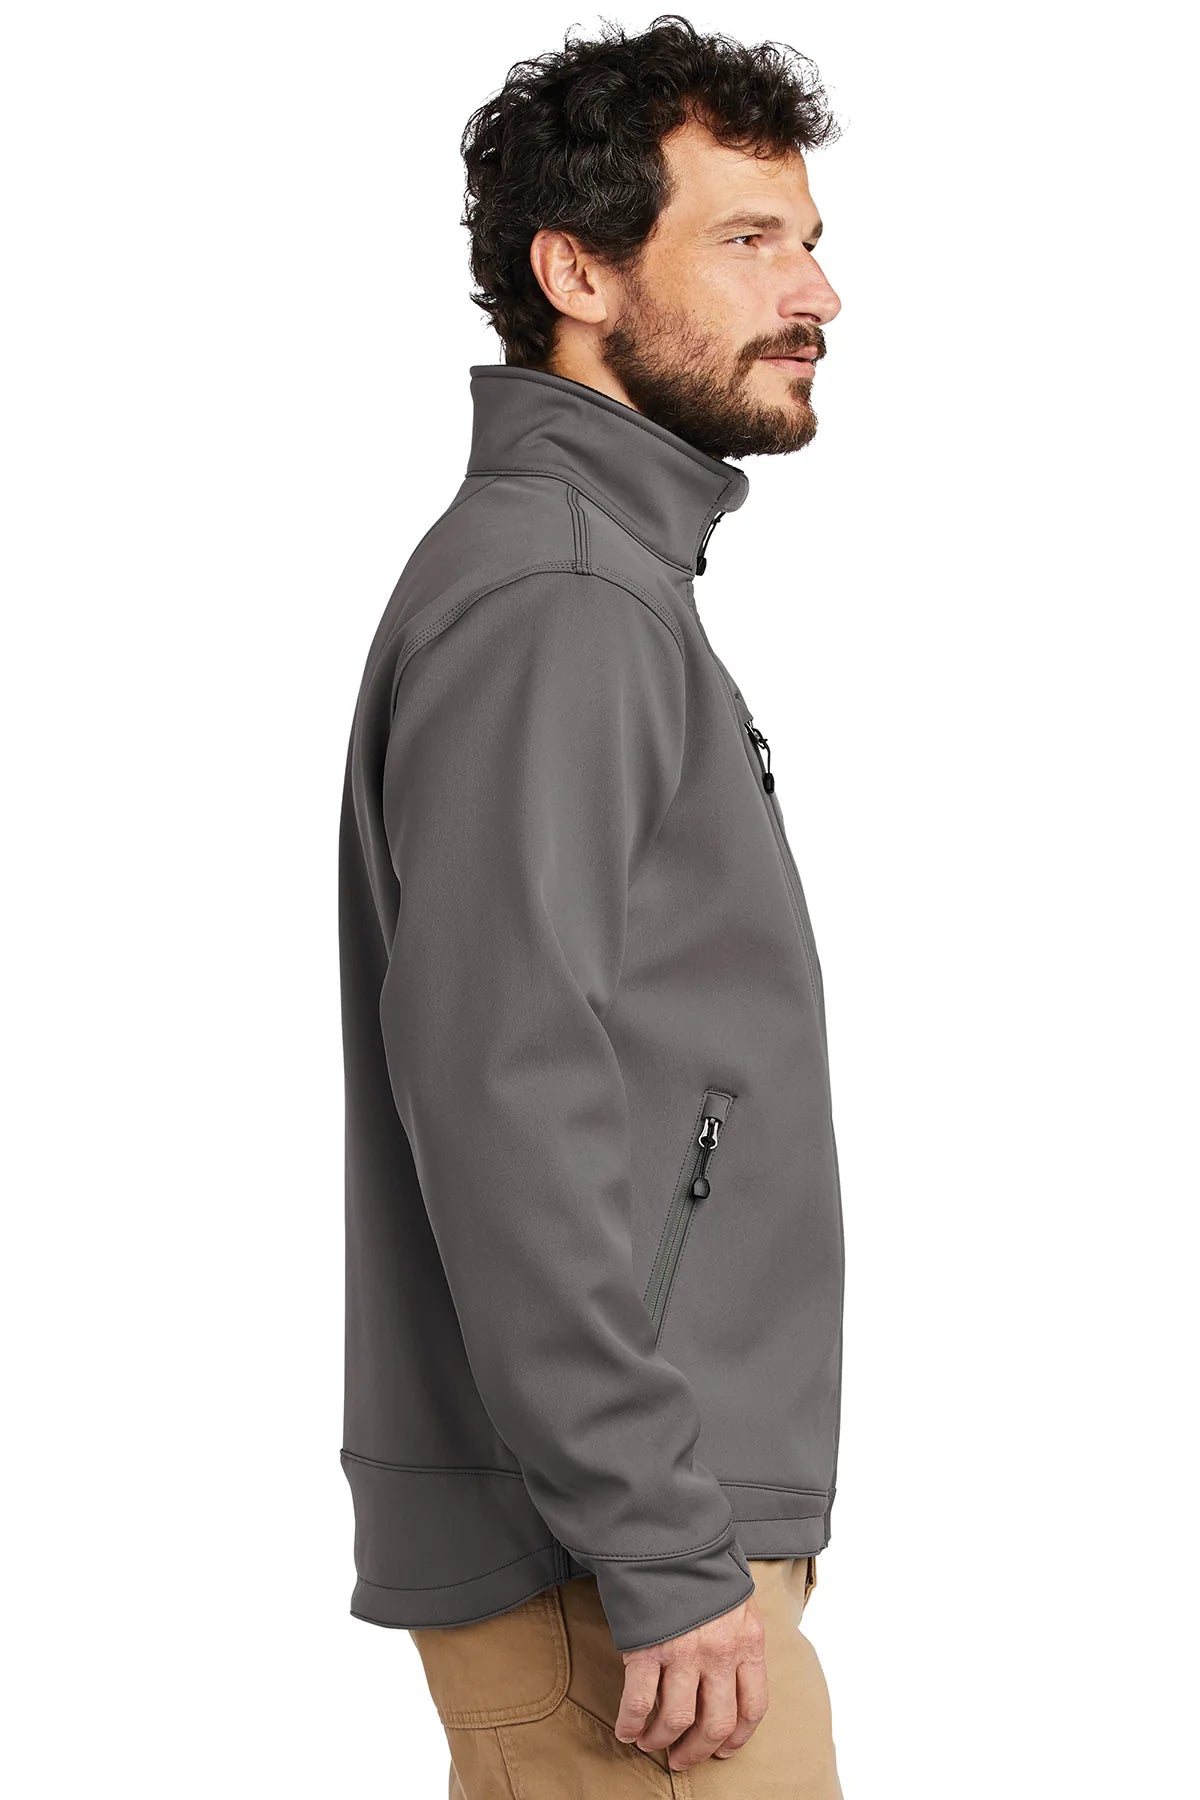 carhartt_ct102199 _charcoal_company_logo_jackets